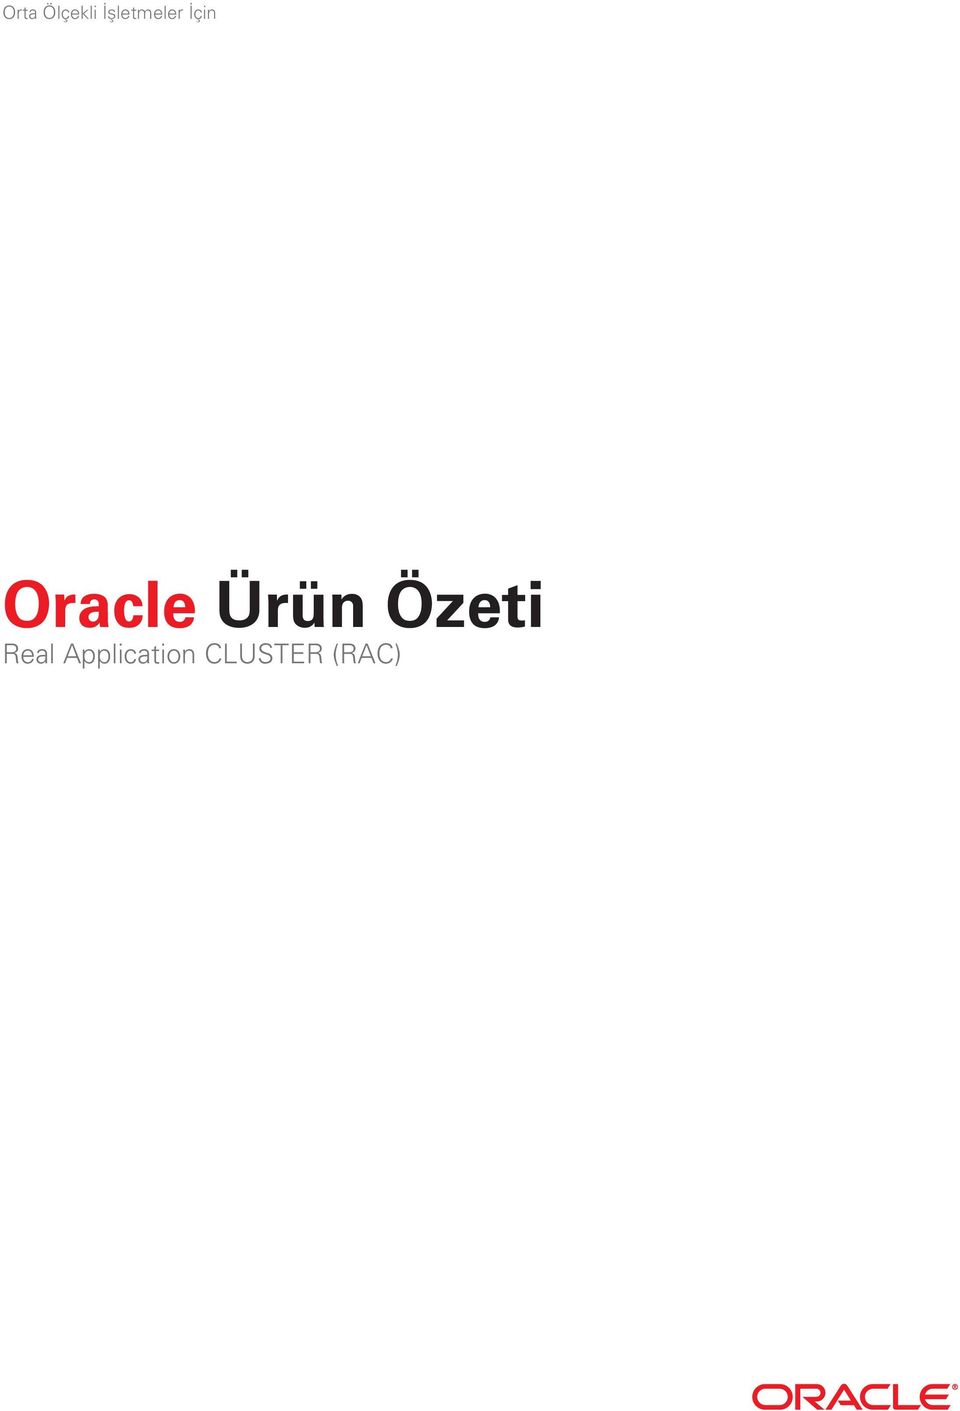 Oracle Ürün Özeti